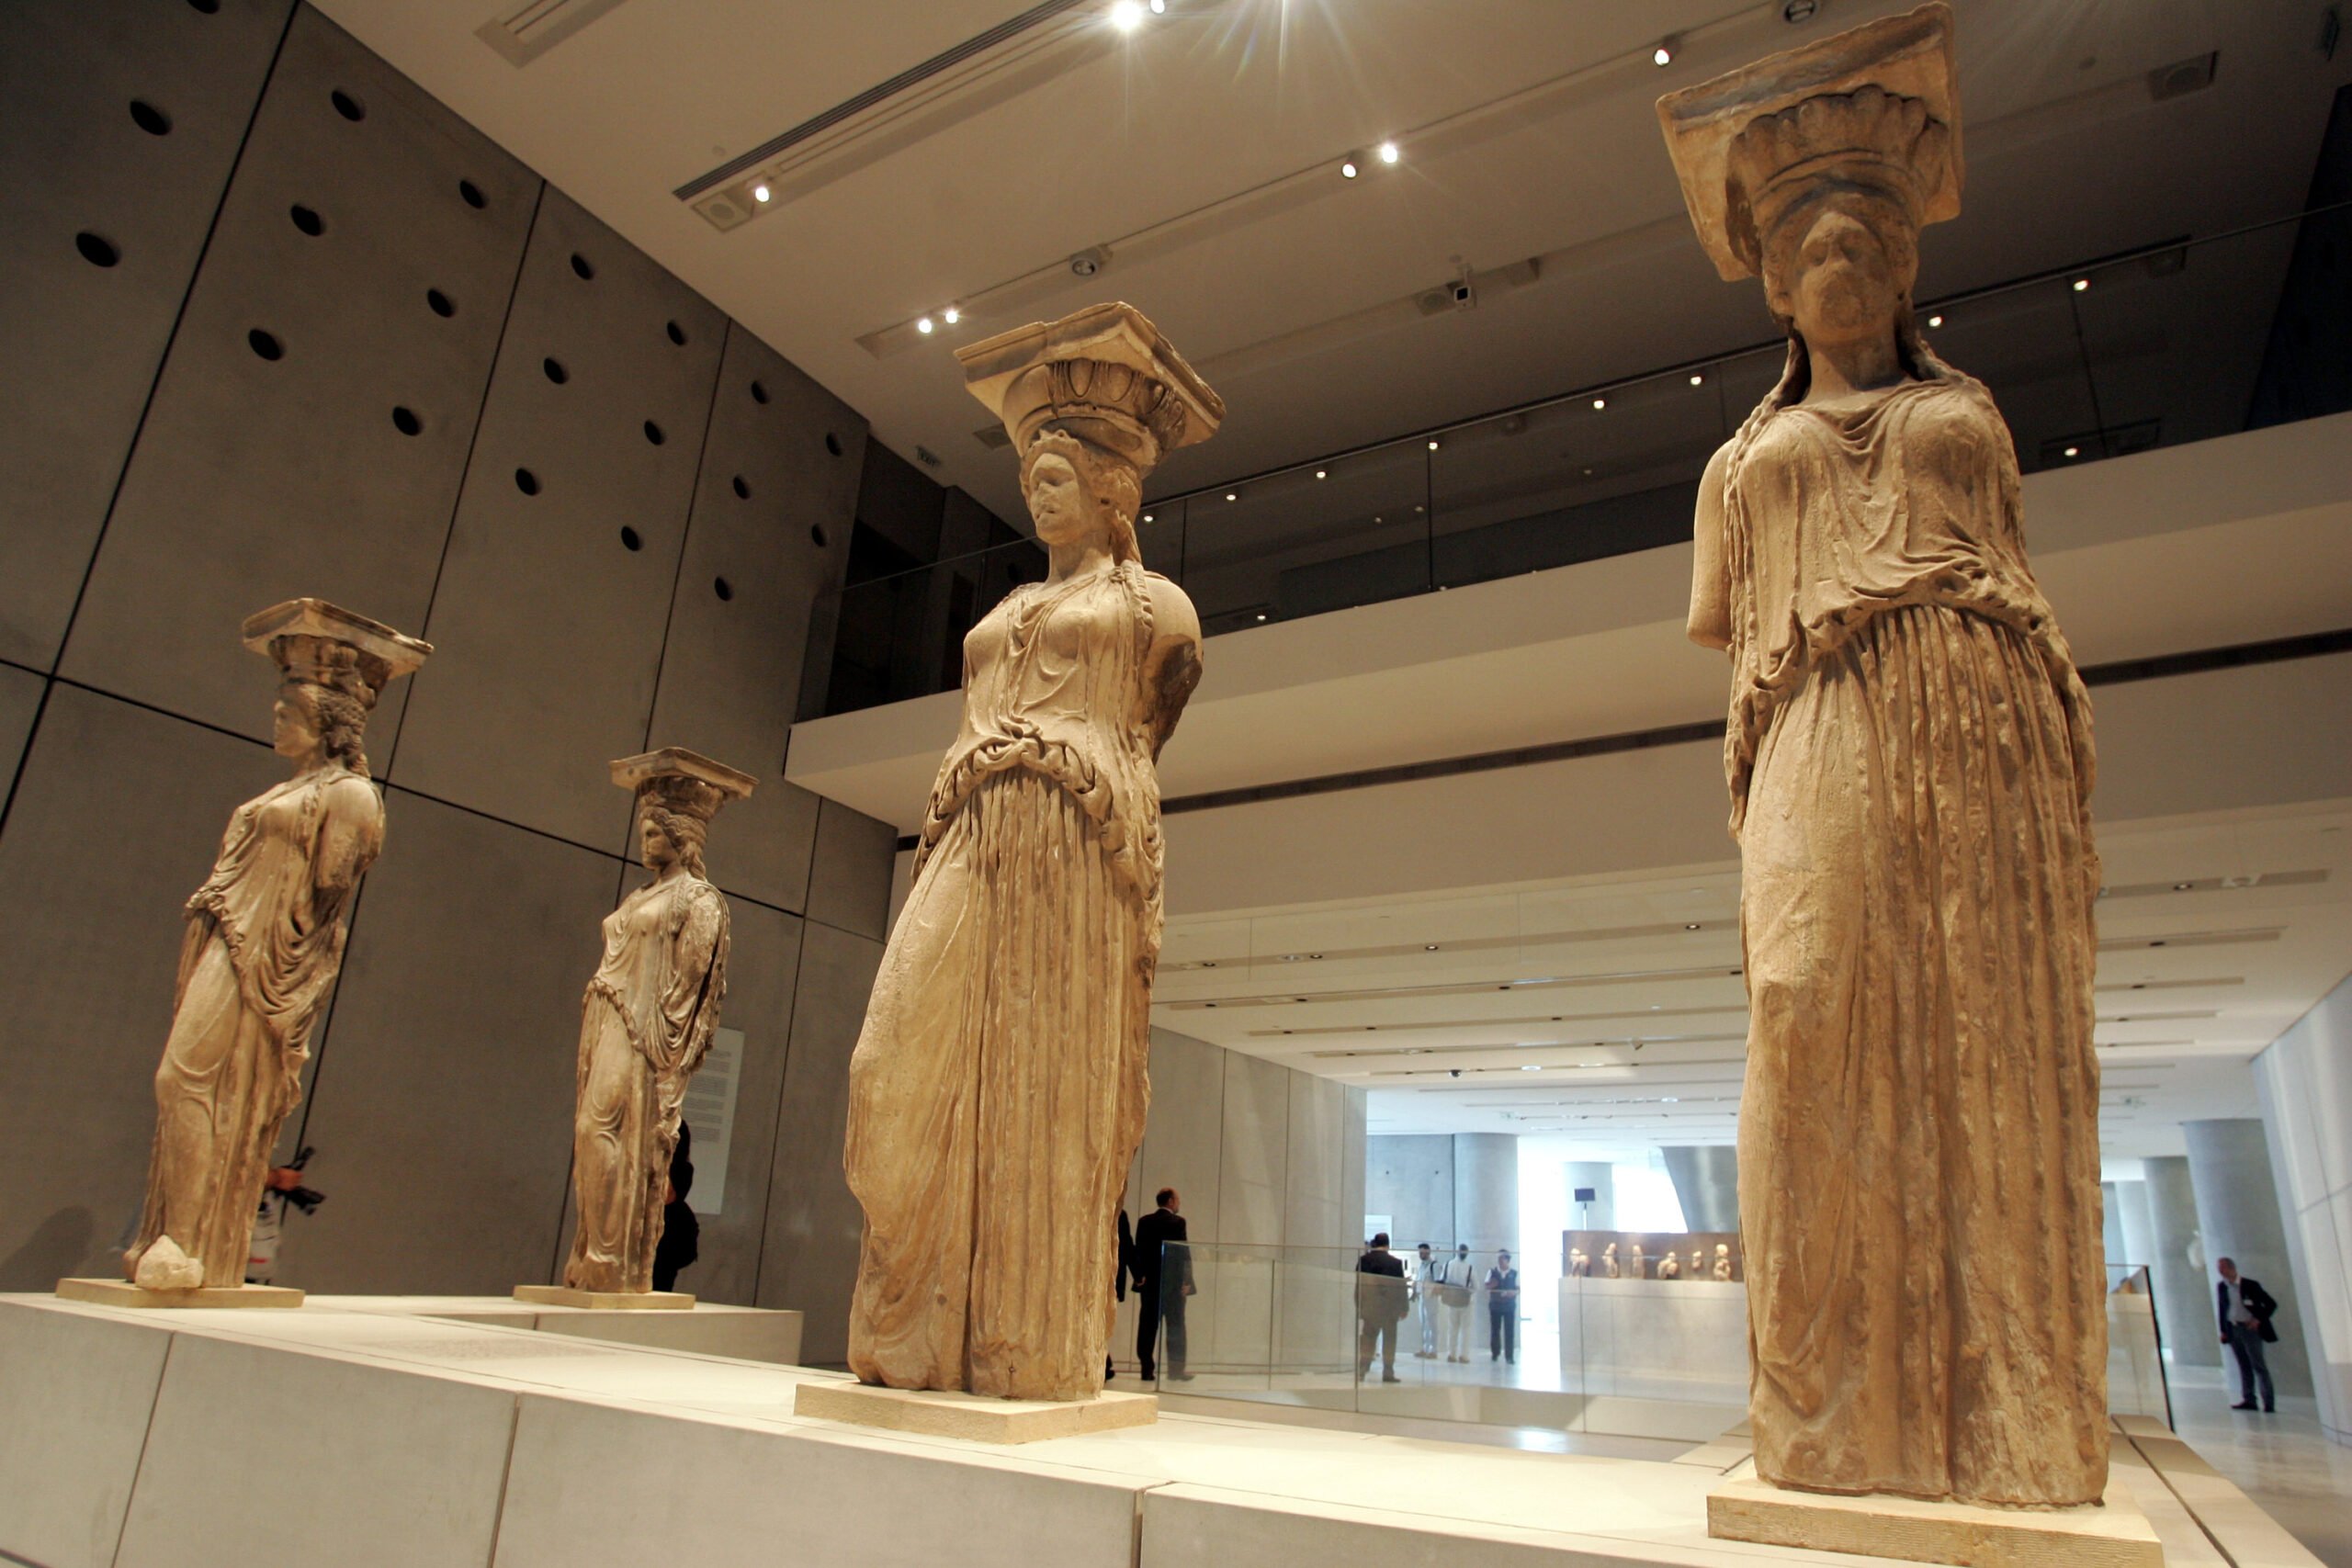 ΑΣΕΠ: Εκδόθηκε η προκήρυξη για 72 προσλήψεις στο Μουσείο Ακρόπολης (ΣΟΧ1/2019)